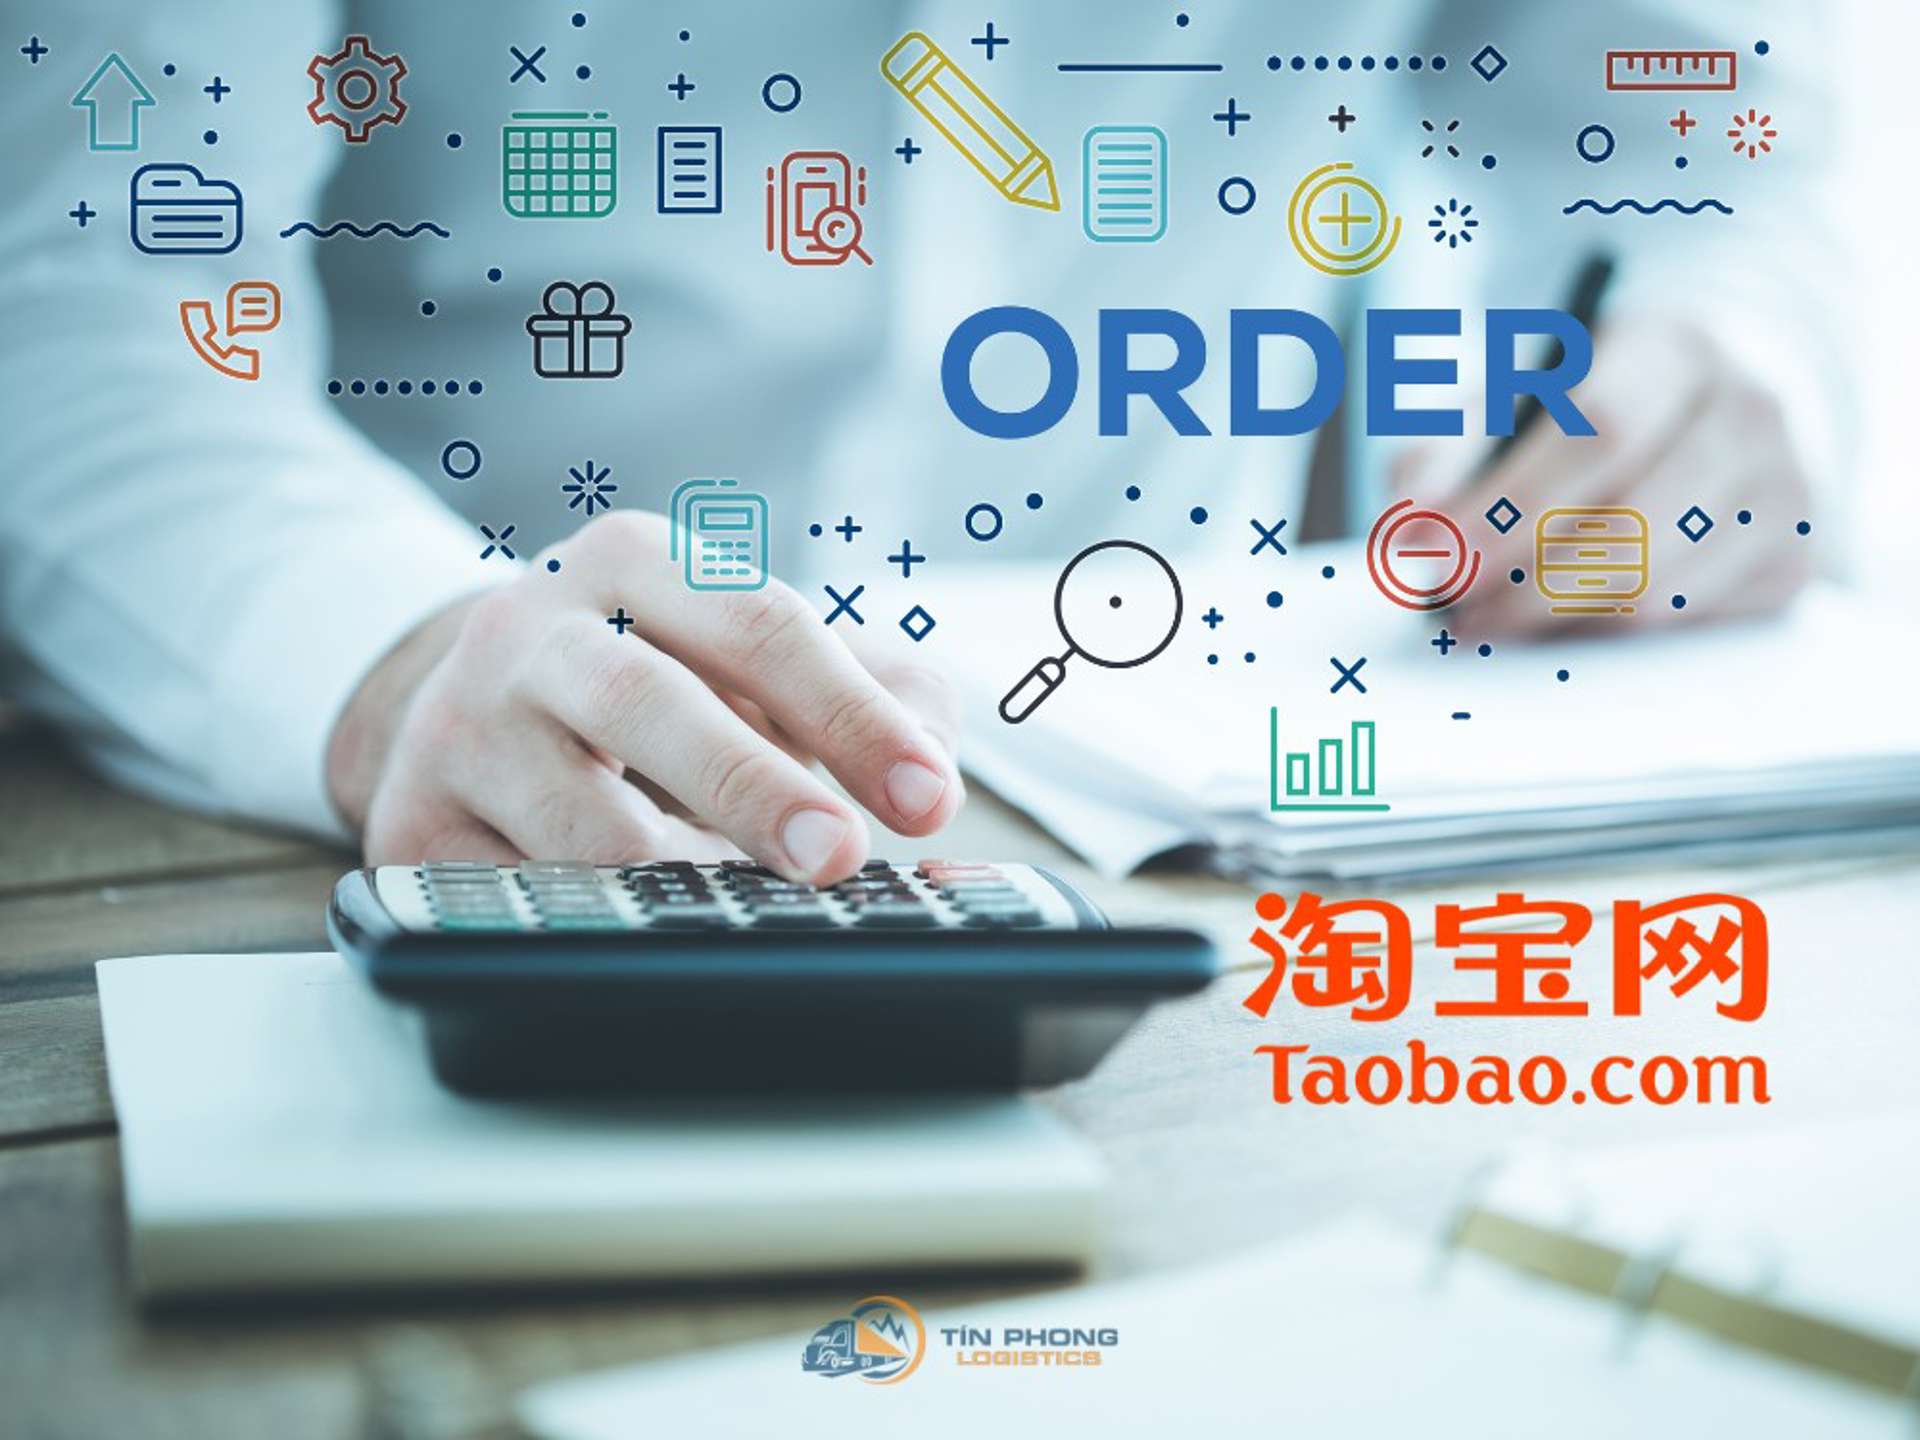 Order Taobao là gì? 7 điều có thể bạn chưa biết khi mua hàng Taobao